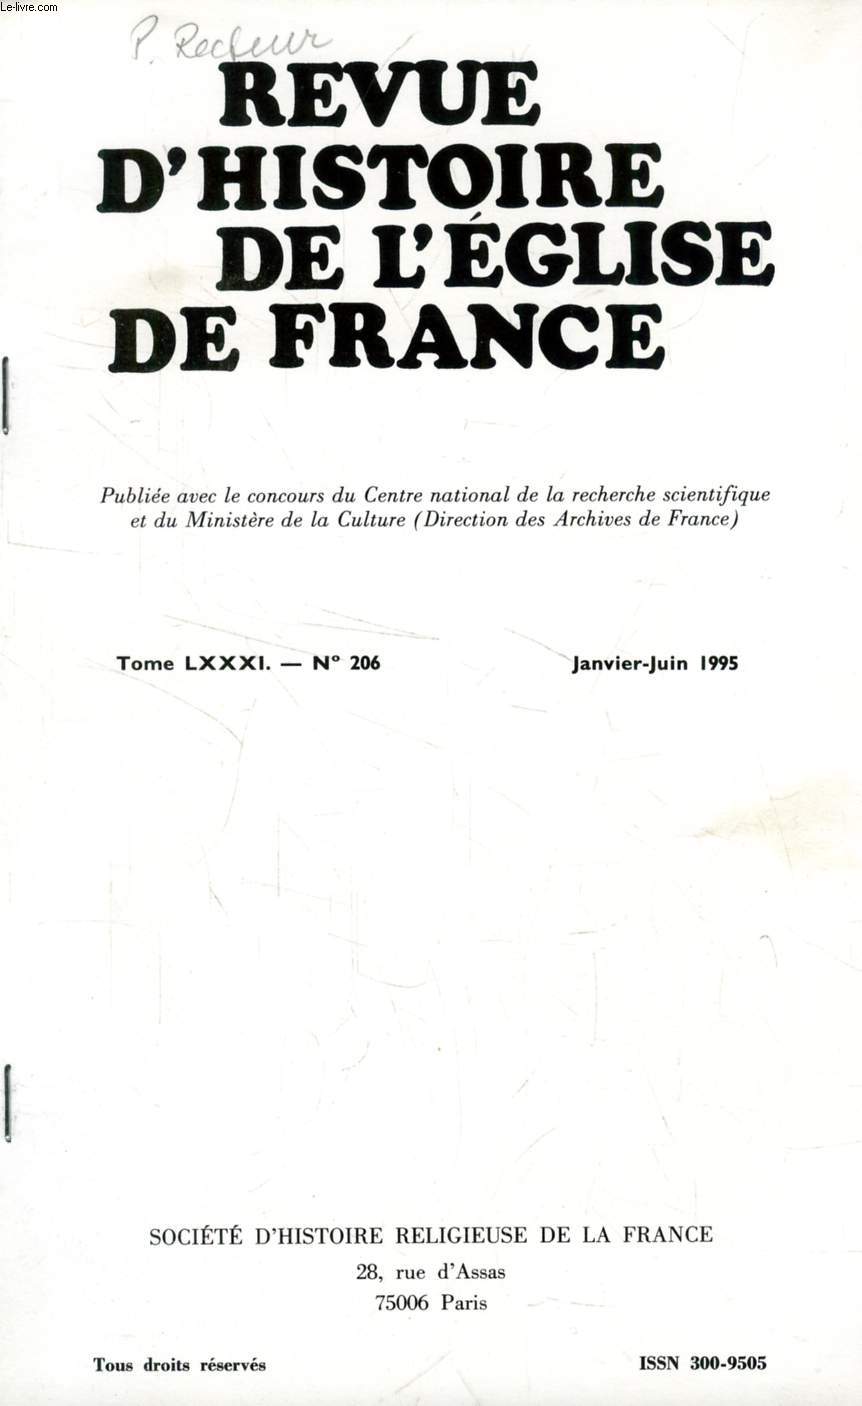 REVUE D'HISTOIRE DE L'EGLISE DE FRANCE, TOME LXXXI, N 206, JAN.-JUIN 1995 (EXTRAIT), L'ENSEIGNEMENT LIBRE CATHOLIQUE AU XIXe SIECLE, ASPECTS JURIDIQUES